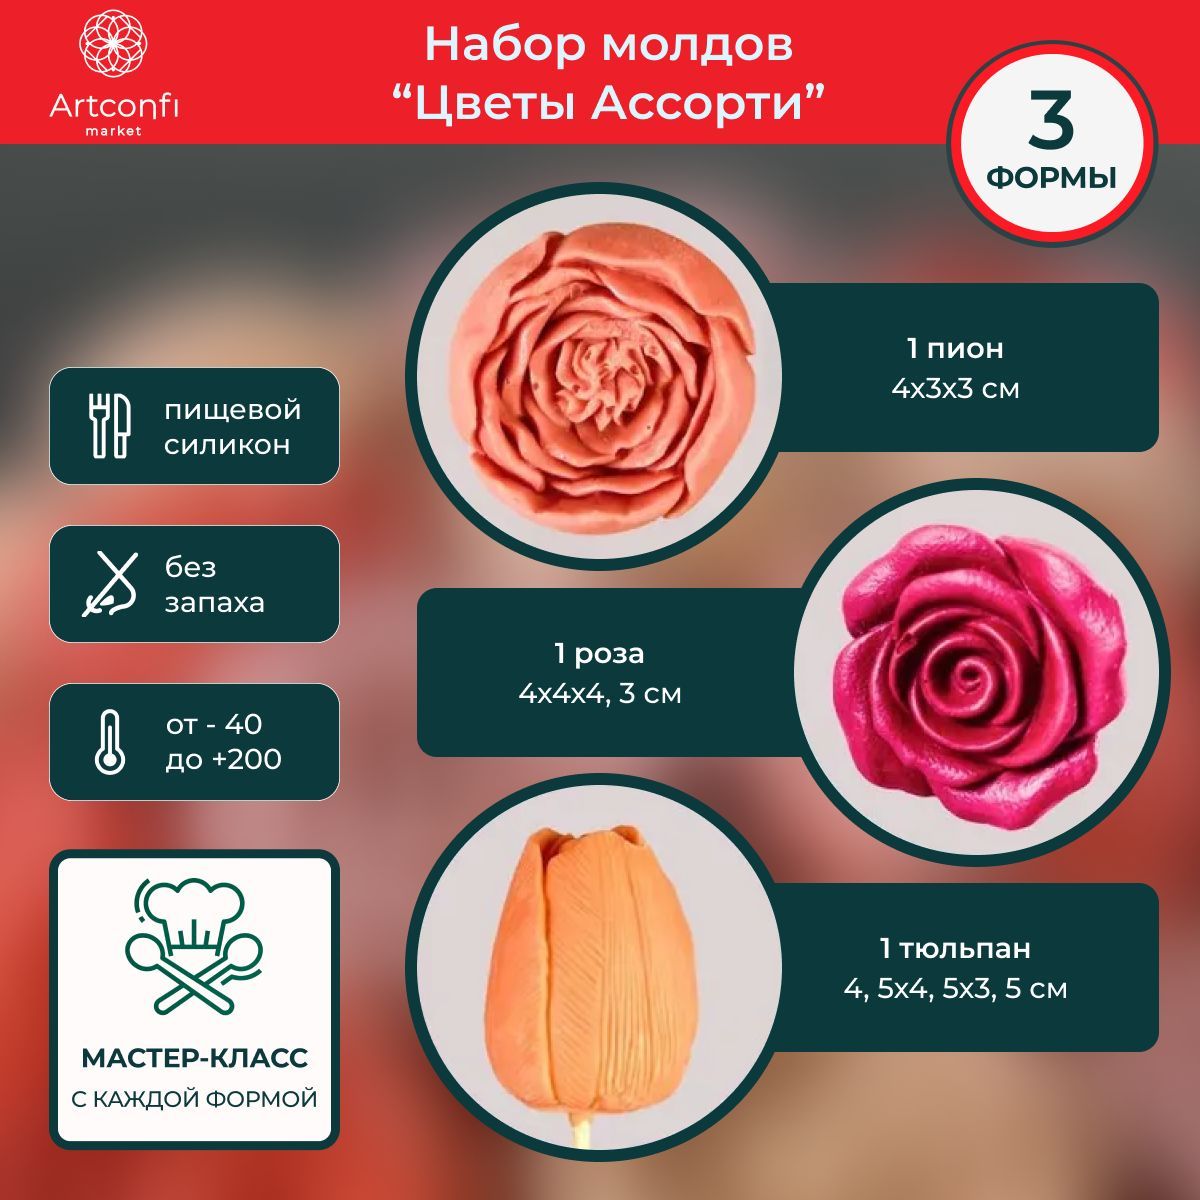 Мастер-класс: винтажная английская роза из холодного фарфора | Пикабу